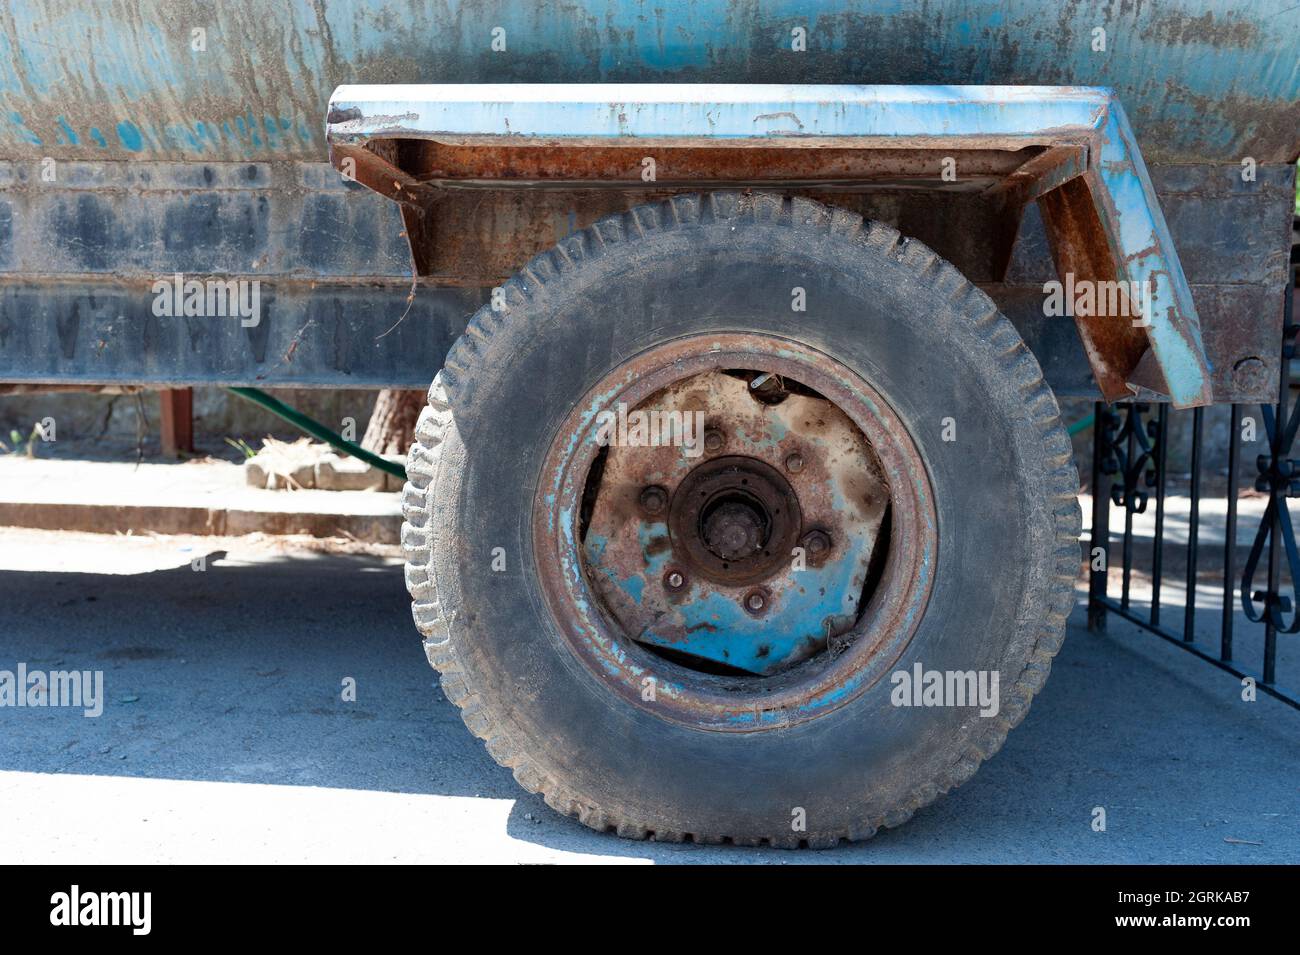 Vehículo viejo, vehículo de chatarra, neumático desgastado, pala cargadora retroexcavadora Foto de stock